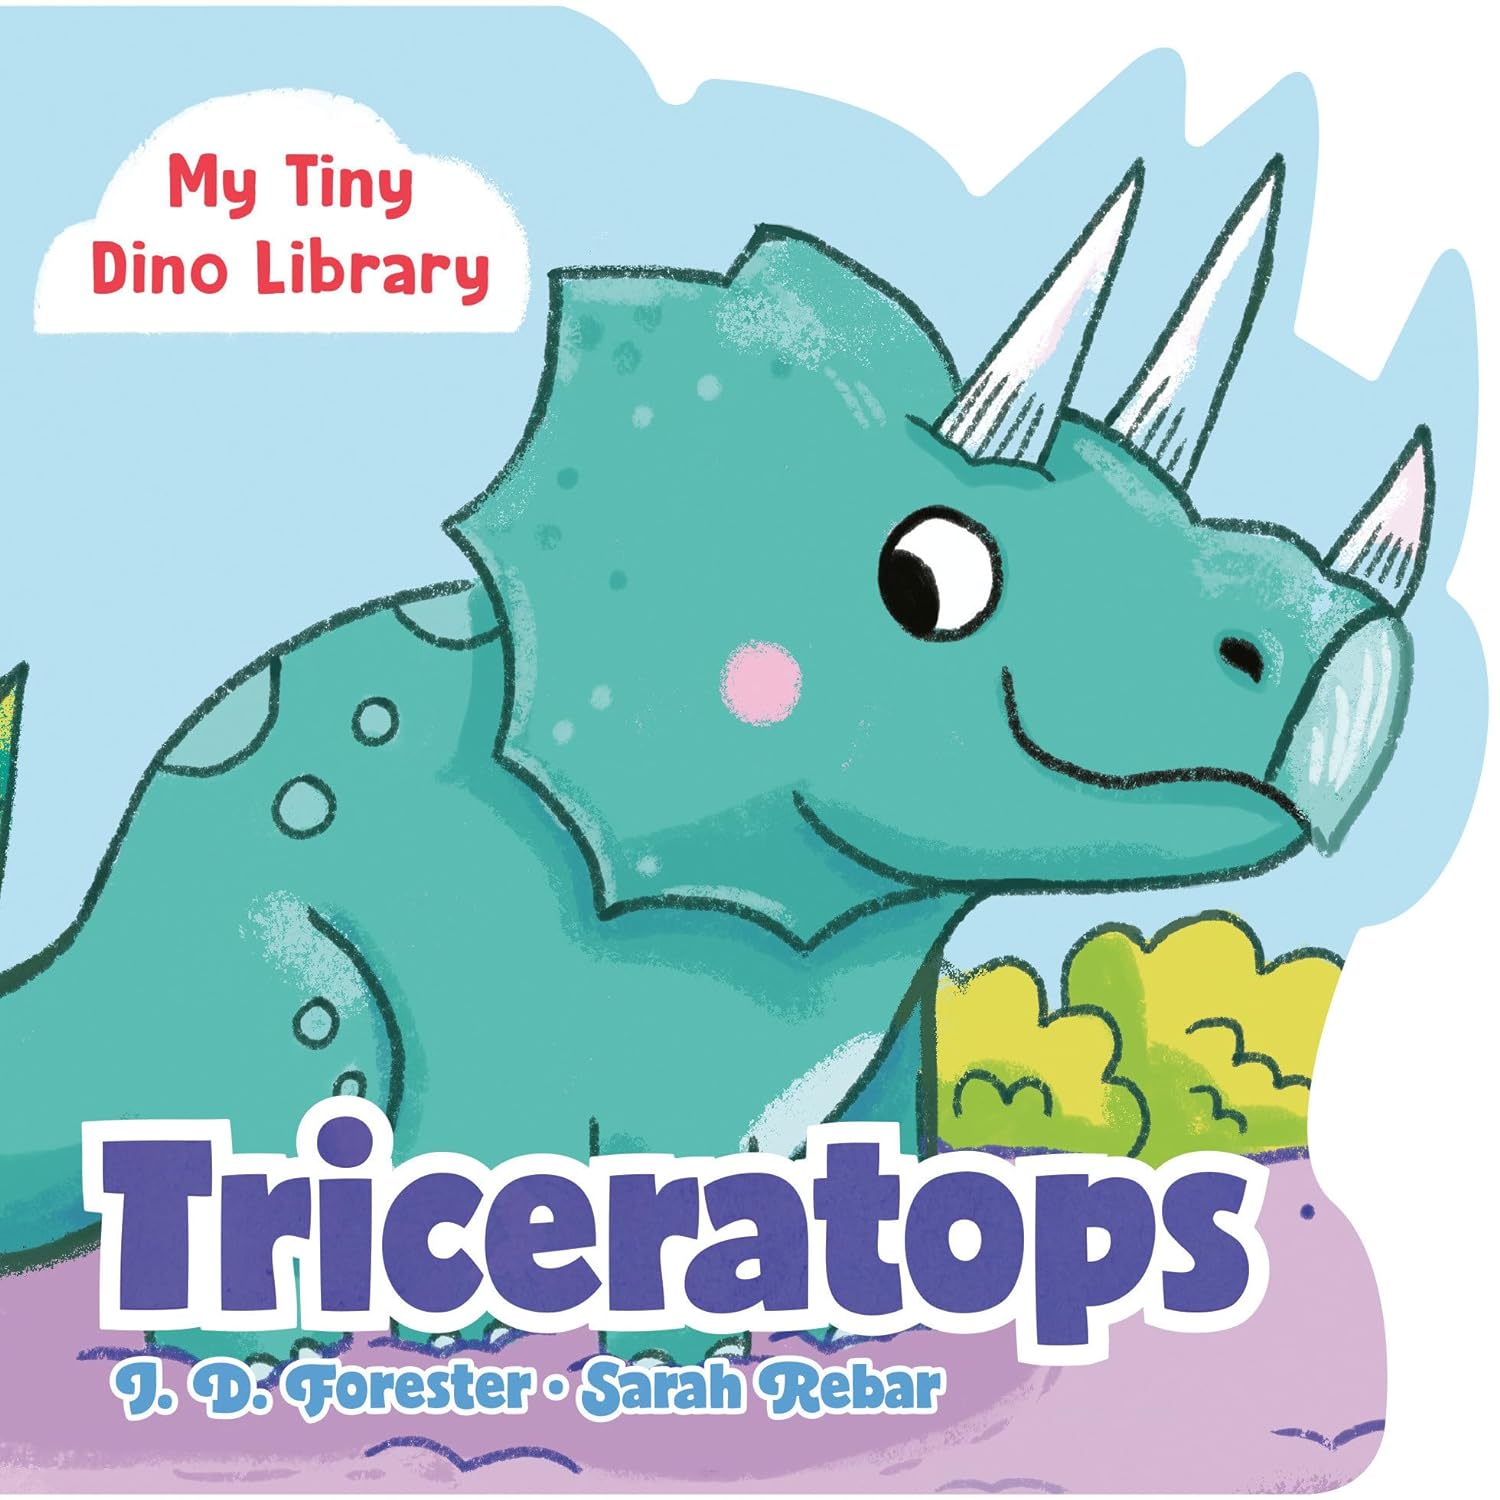 My Tiny Dino Library - Triceratops